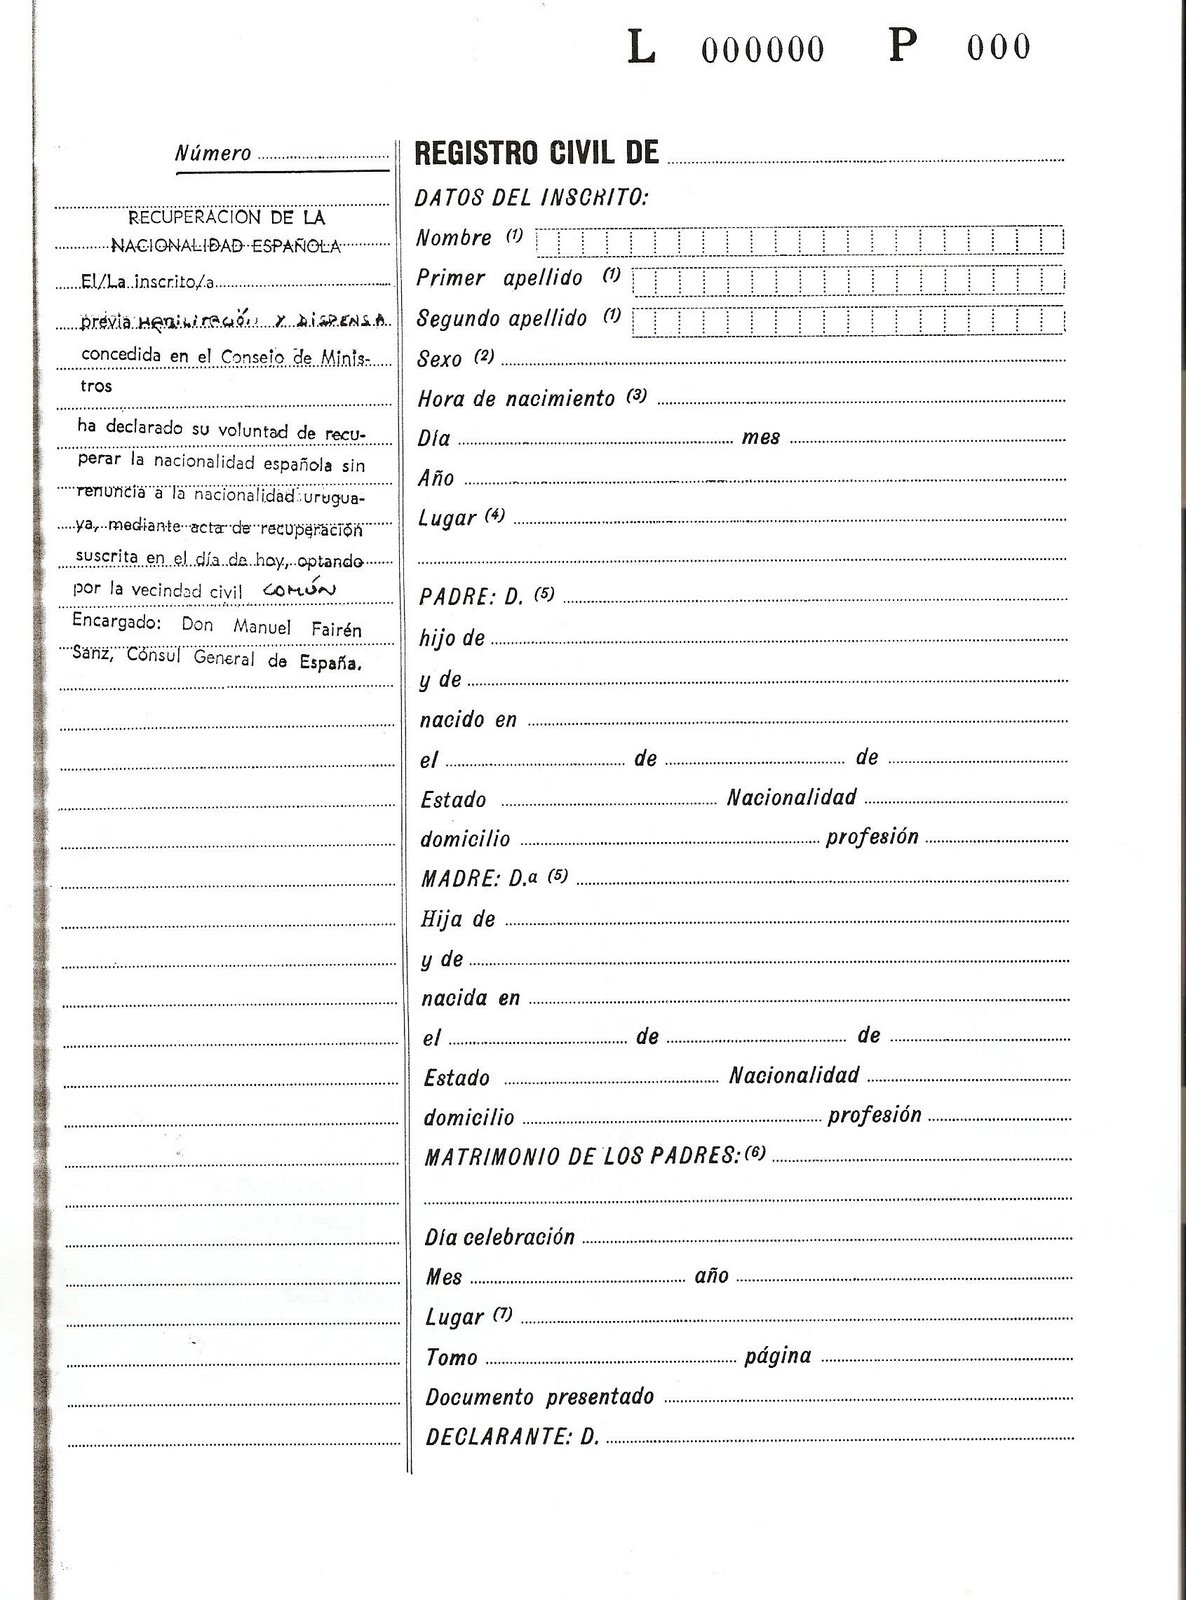 Registro civil de matrimonio pdf